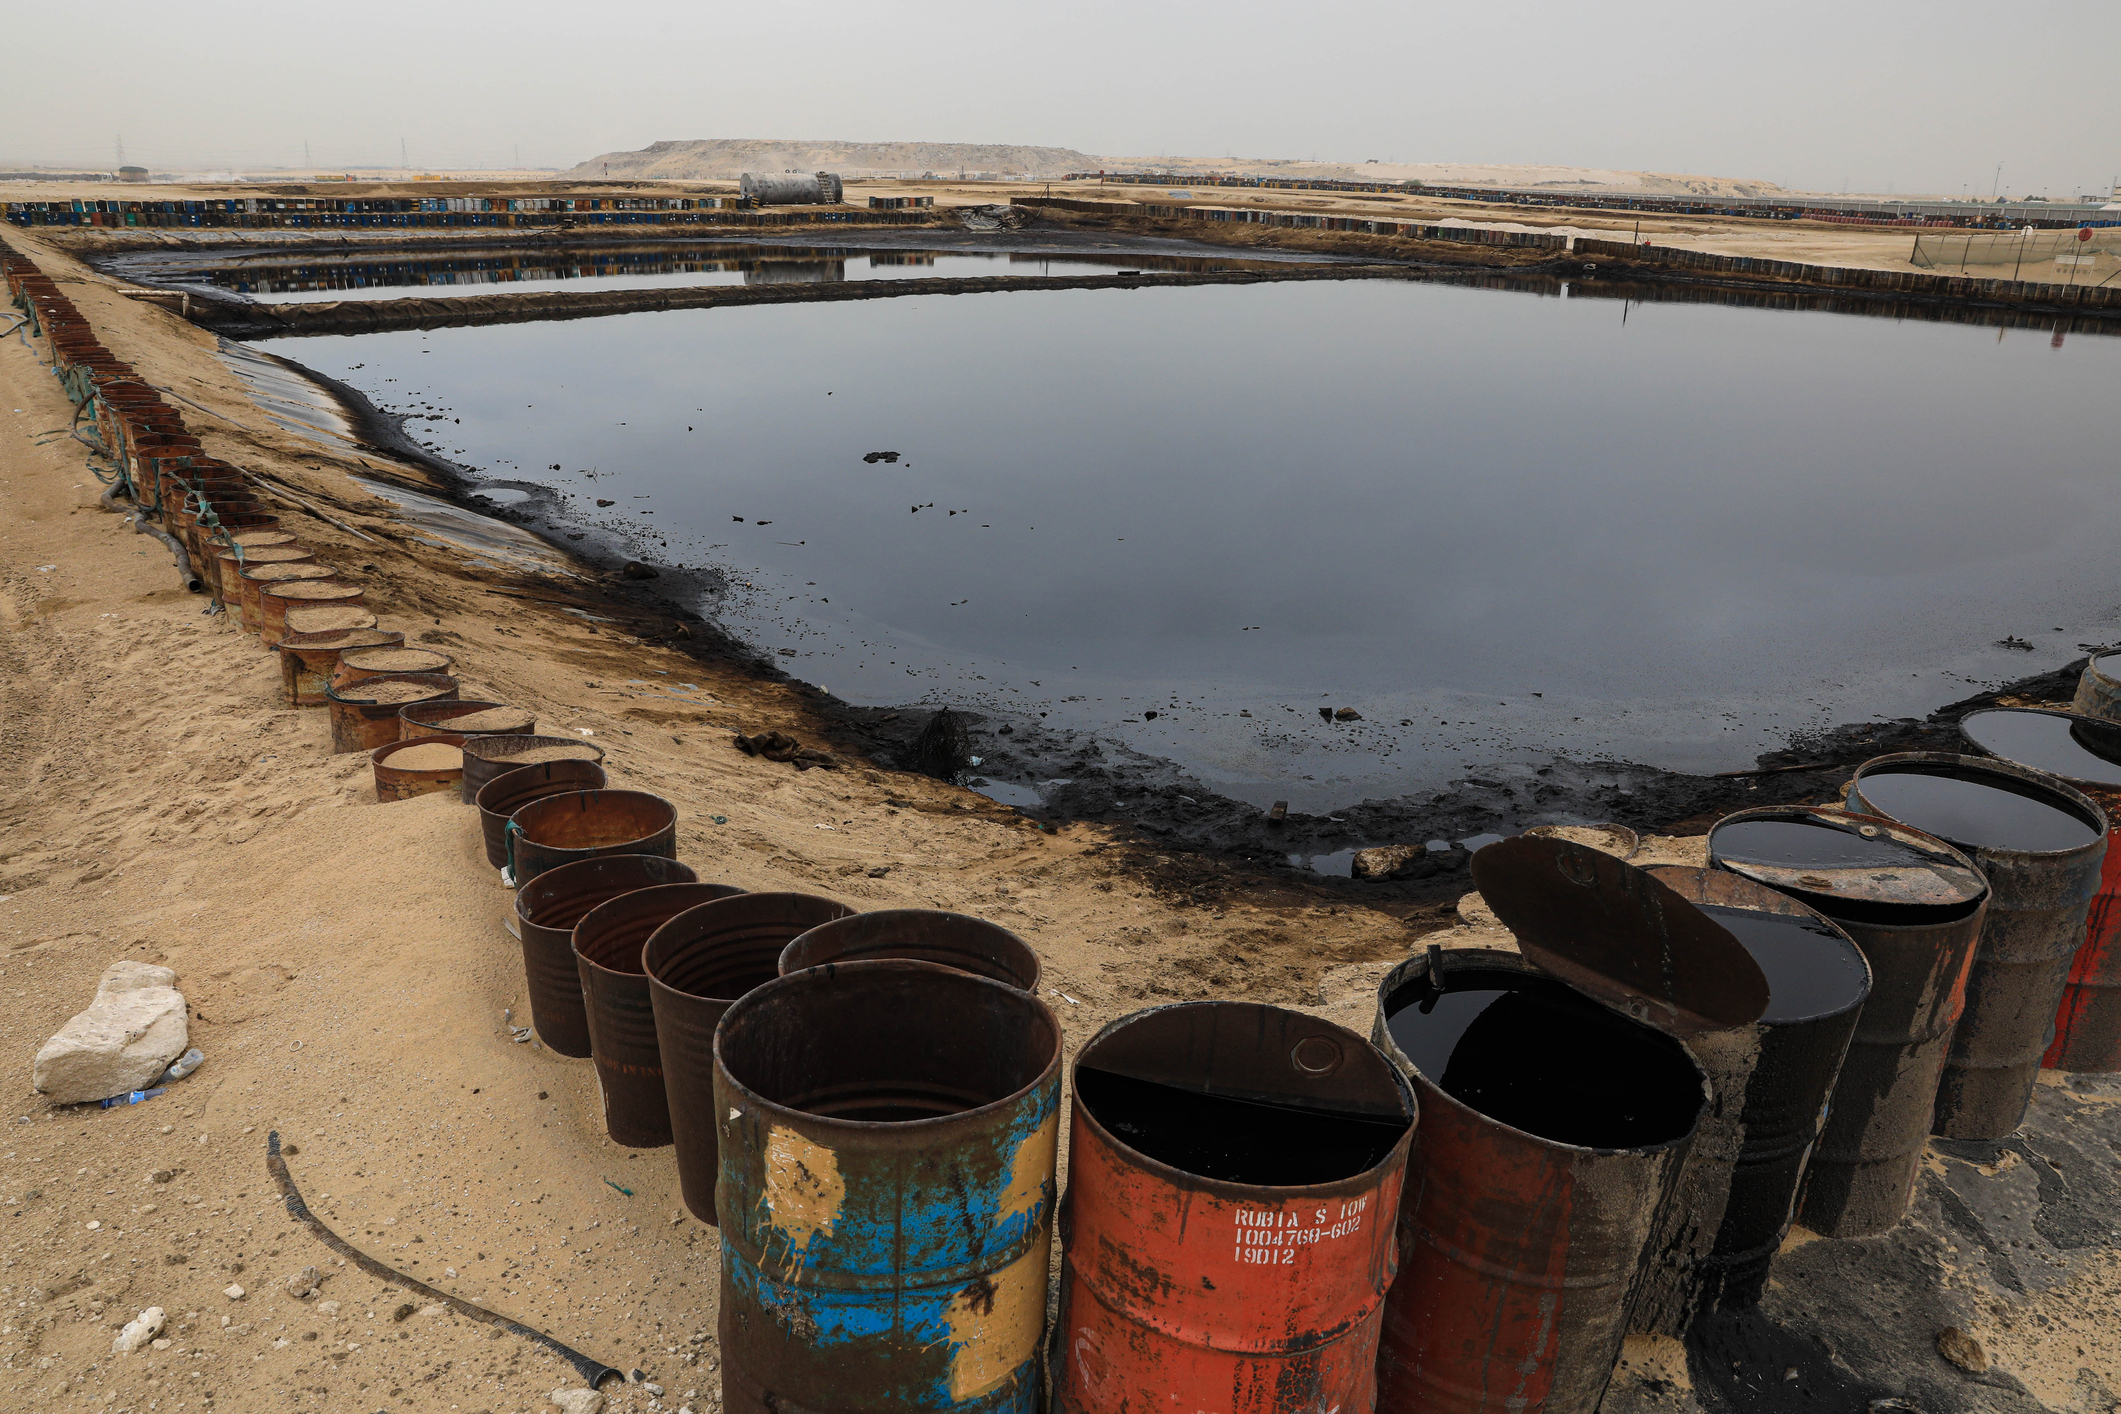 Lac de evaporare a unui depozit de petrol de lângă Riad, capitala Arabiei Saudite, sursă foto dreamstime